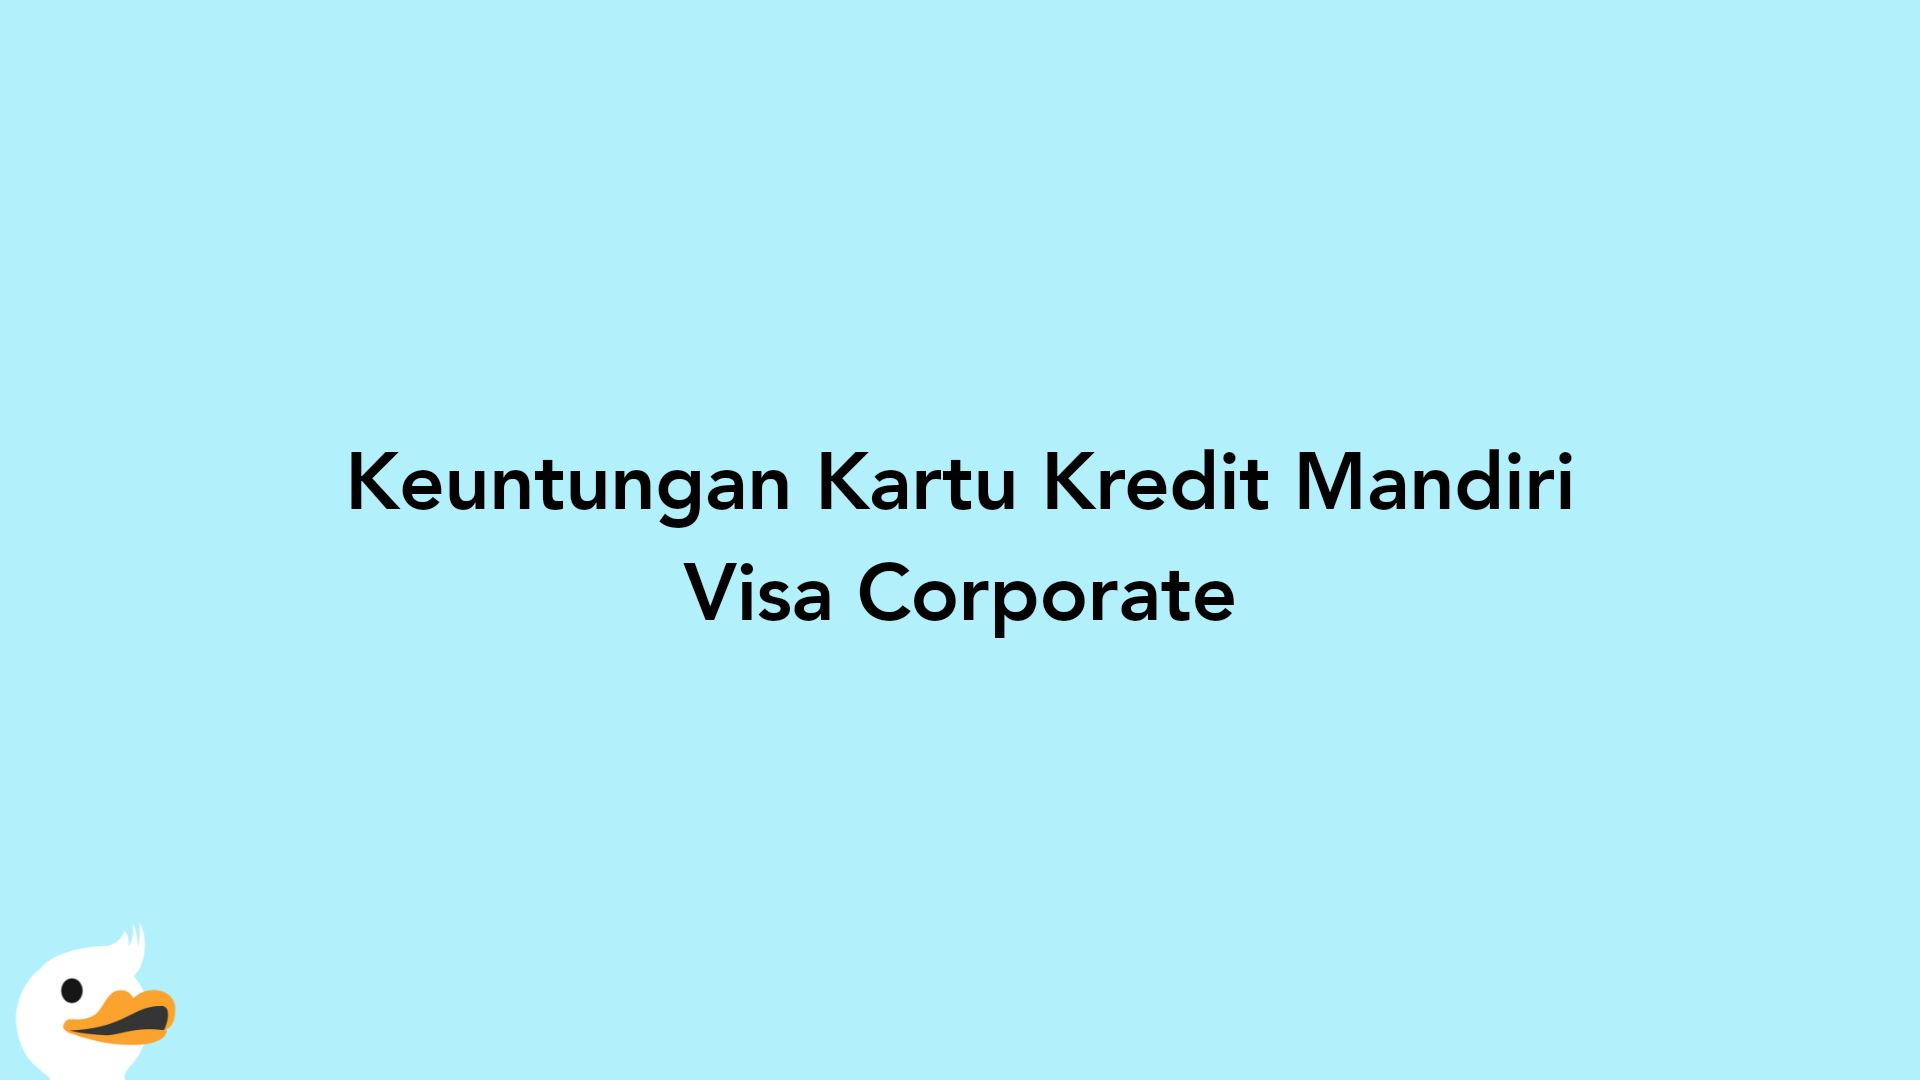 Keuntungan Kartu Kredit Mandiri Visa Corporate